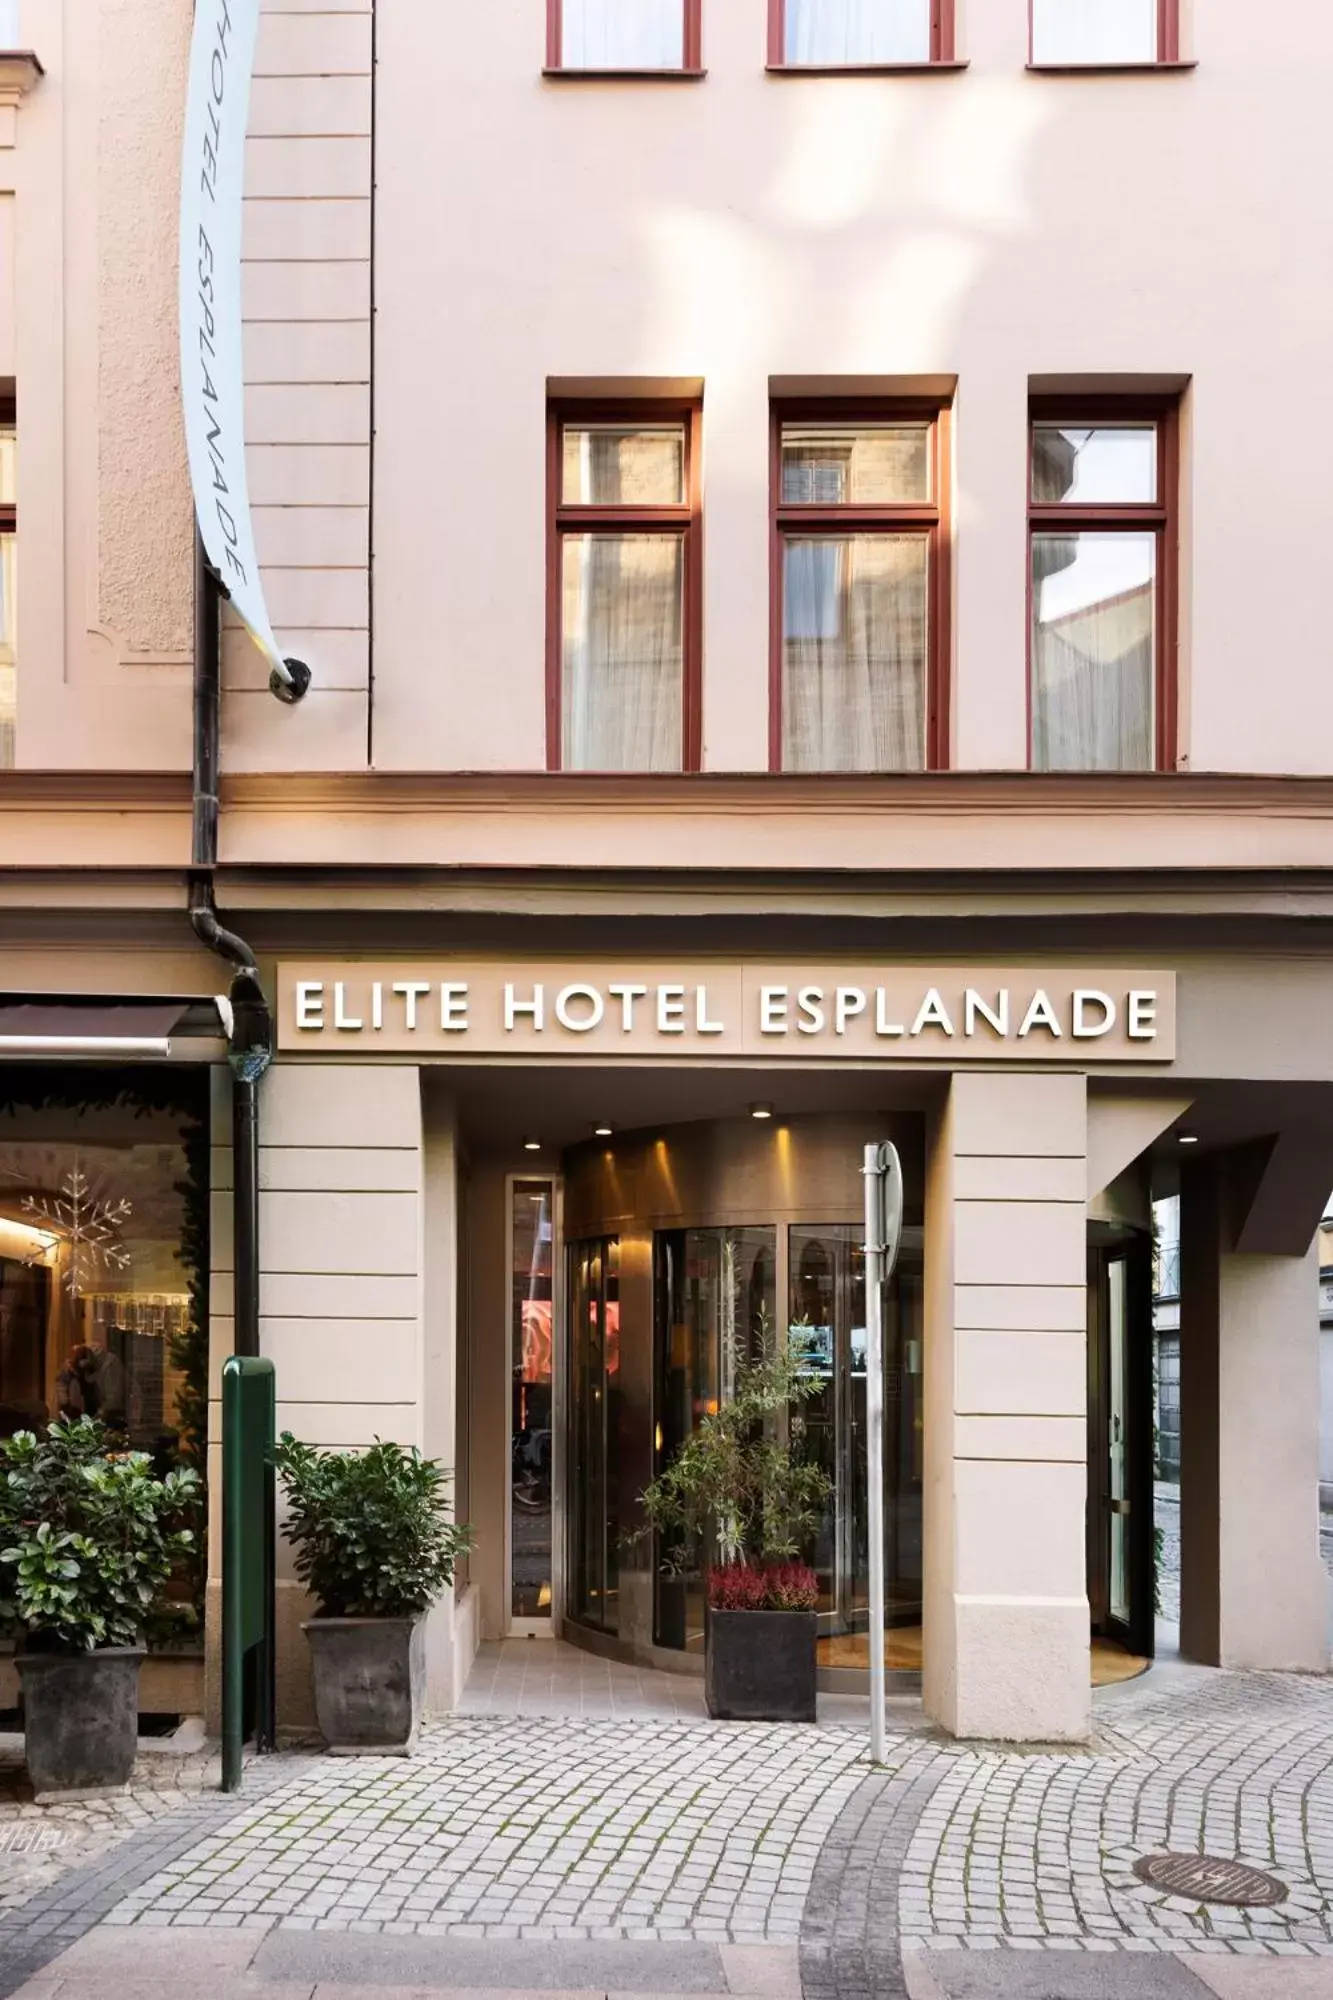 Facade/entrance in Elite Hotel Esplanade